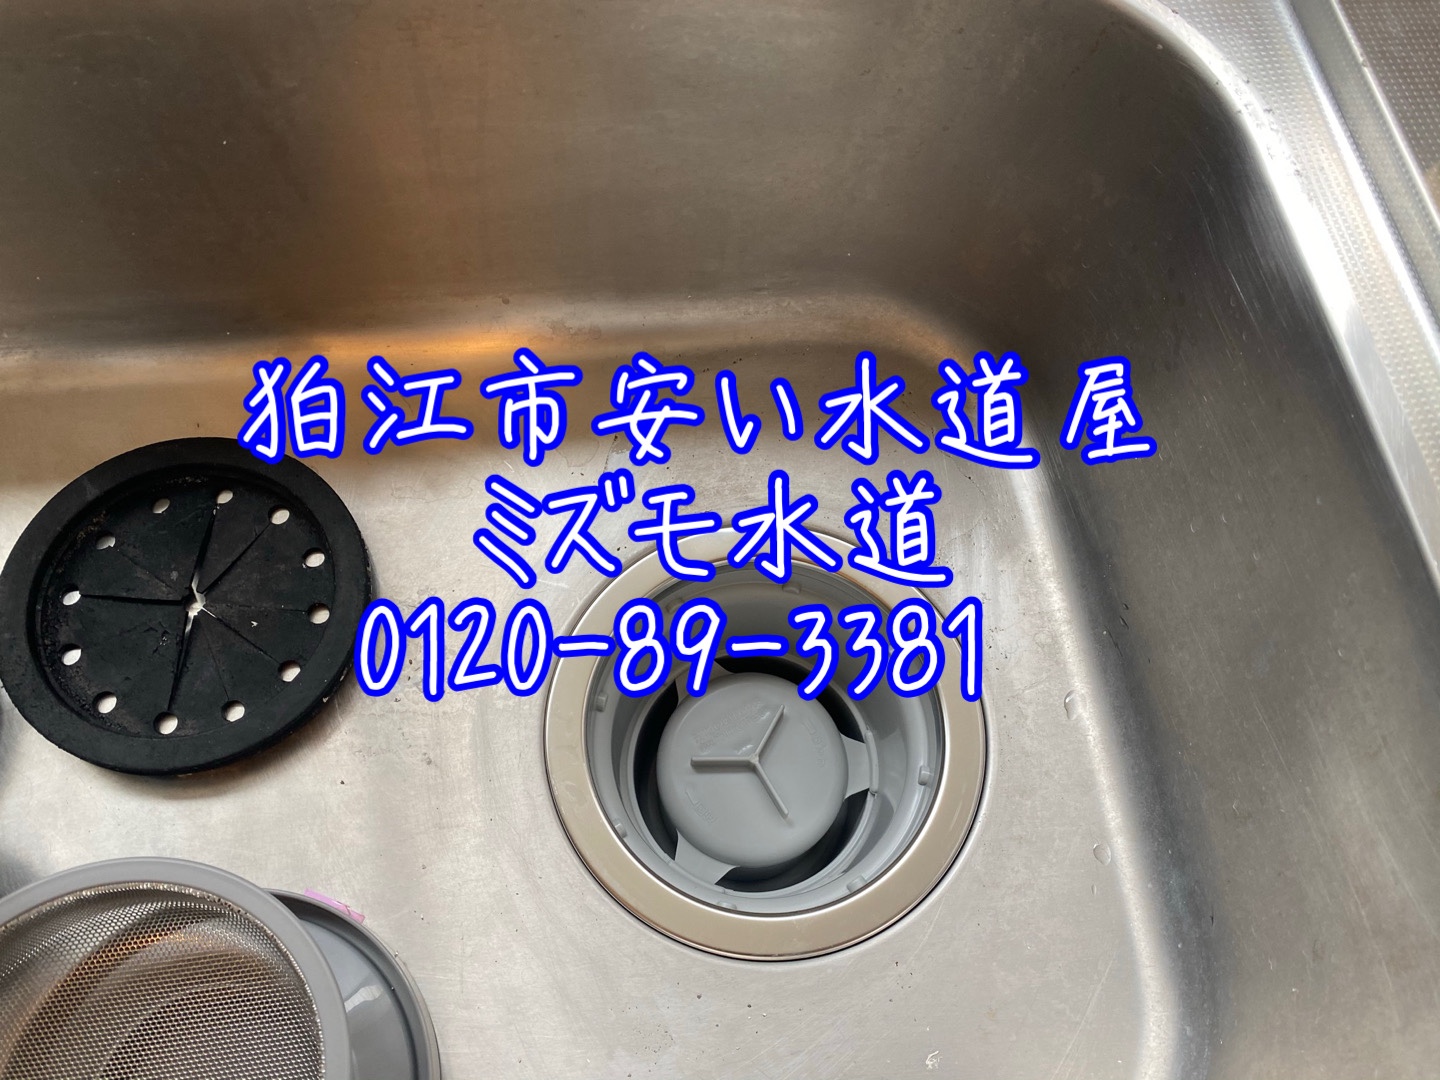 狛江市安い水道修理会社キッチン水漏れ